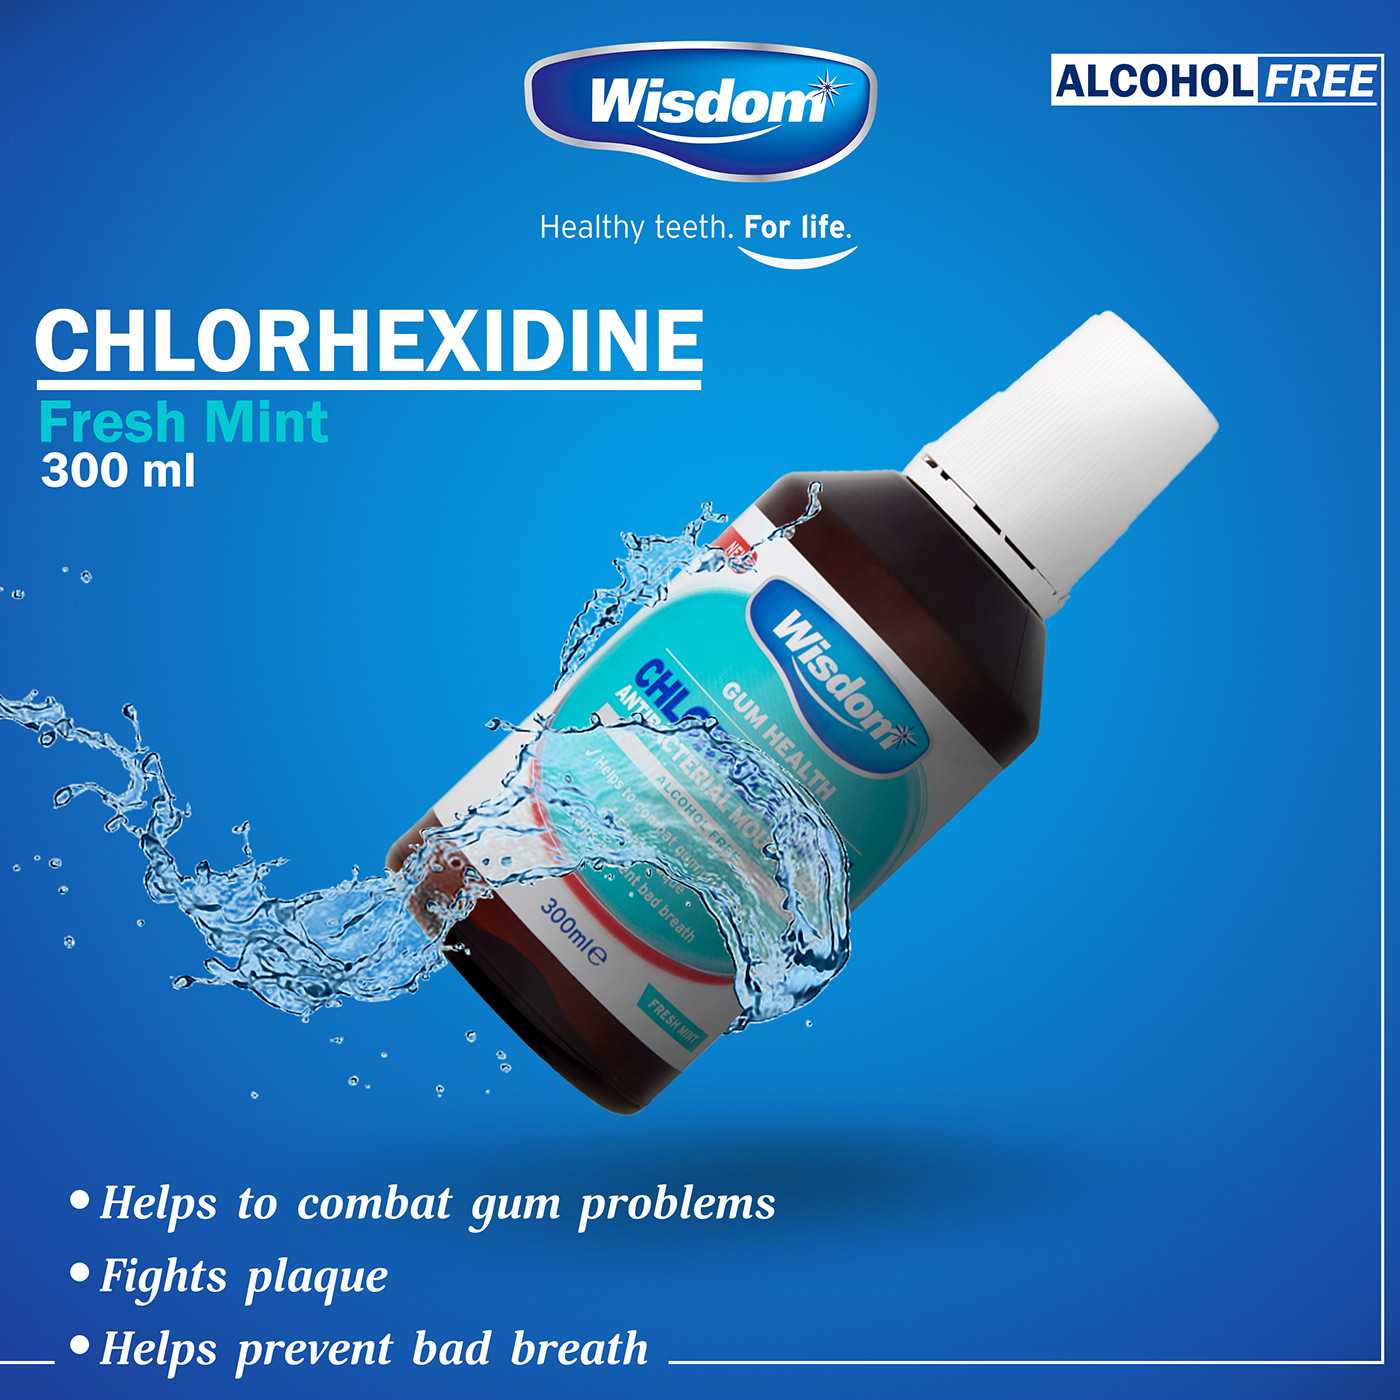 Mouthwash instgram post chlorhexidine